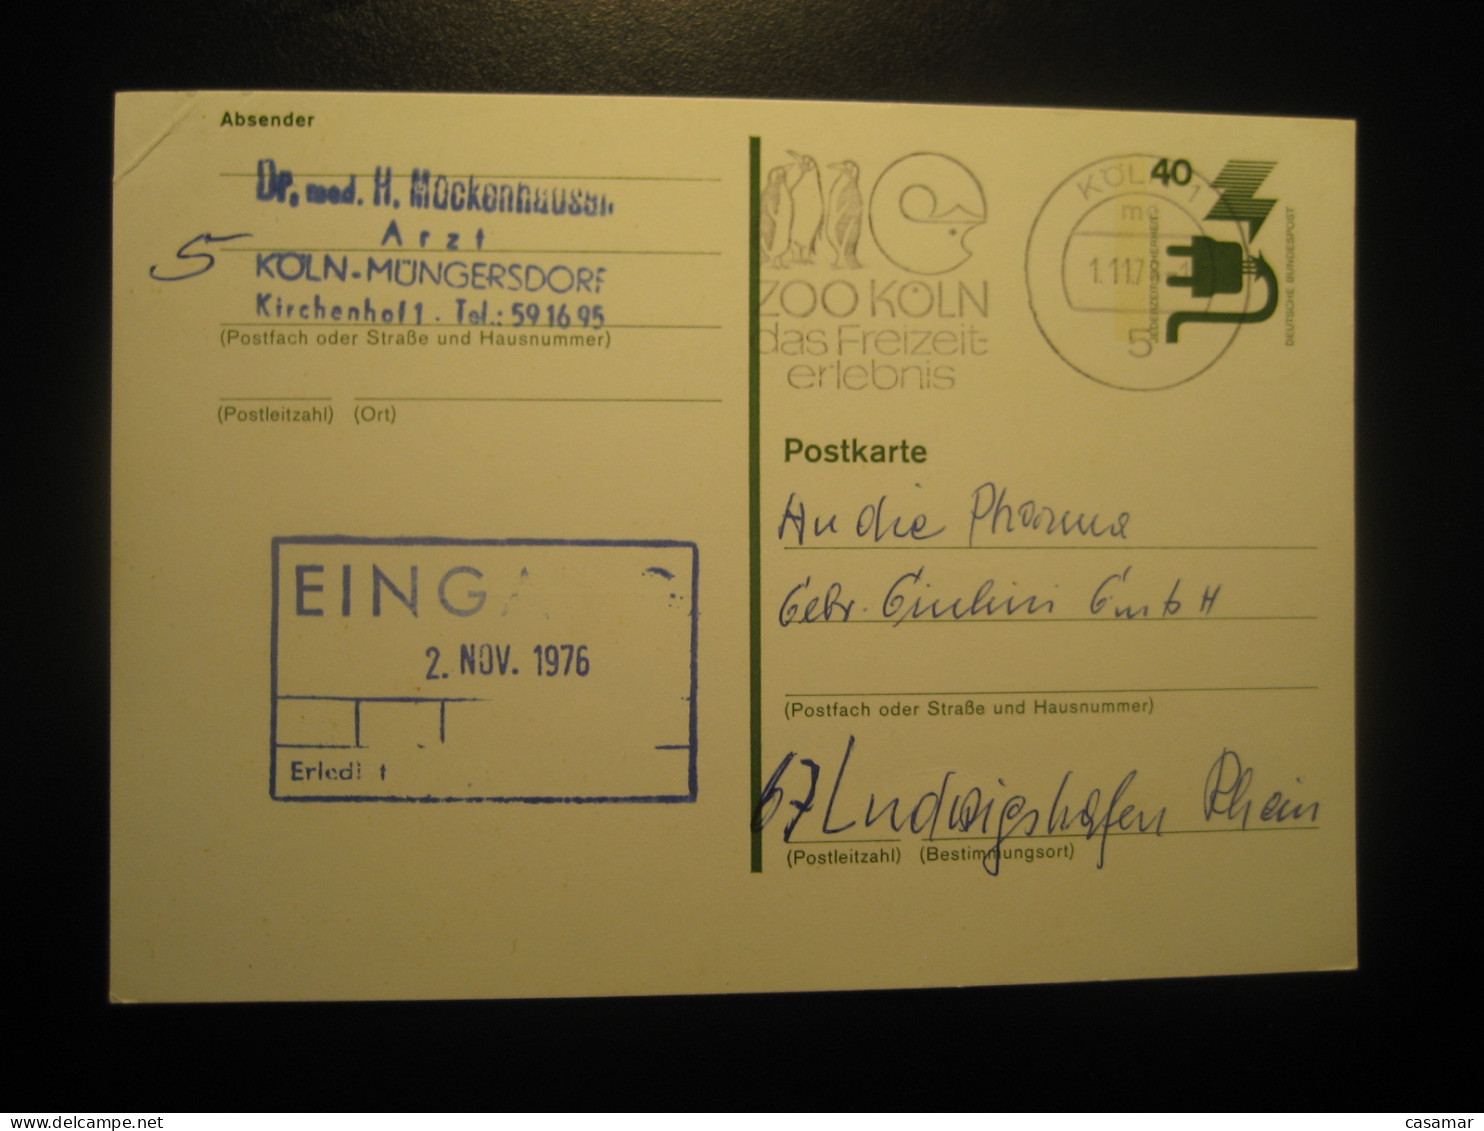 KOLN 1978 To Ludwigshafen Zoo Penguin Penguins Cancel Card GERMANY Antarctic Antarctics Antarctica Pole Polar - Fauna Antartica